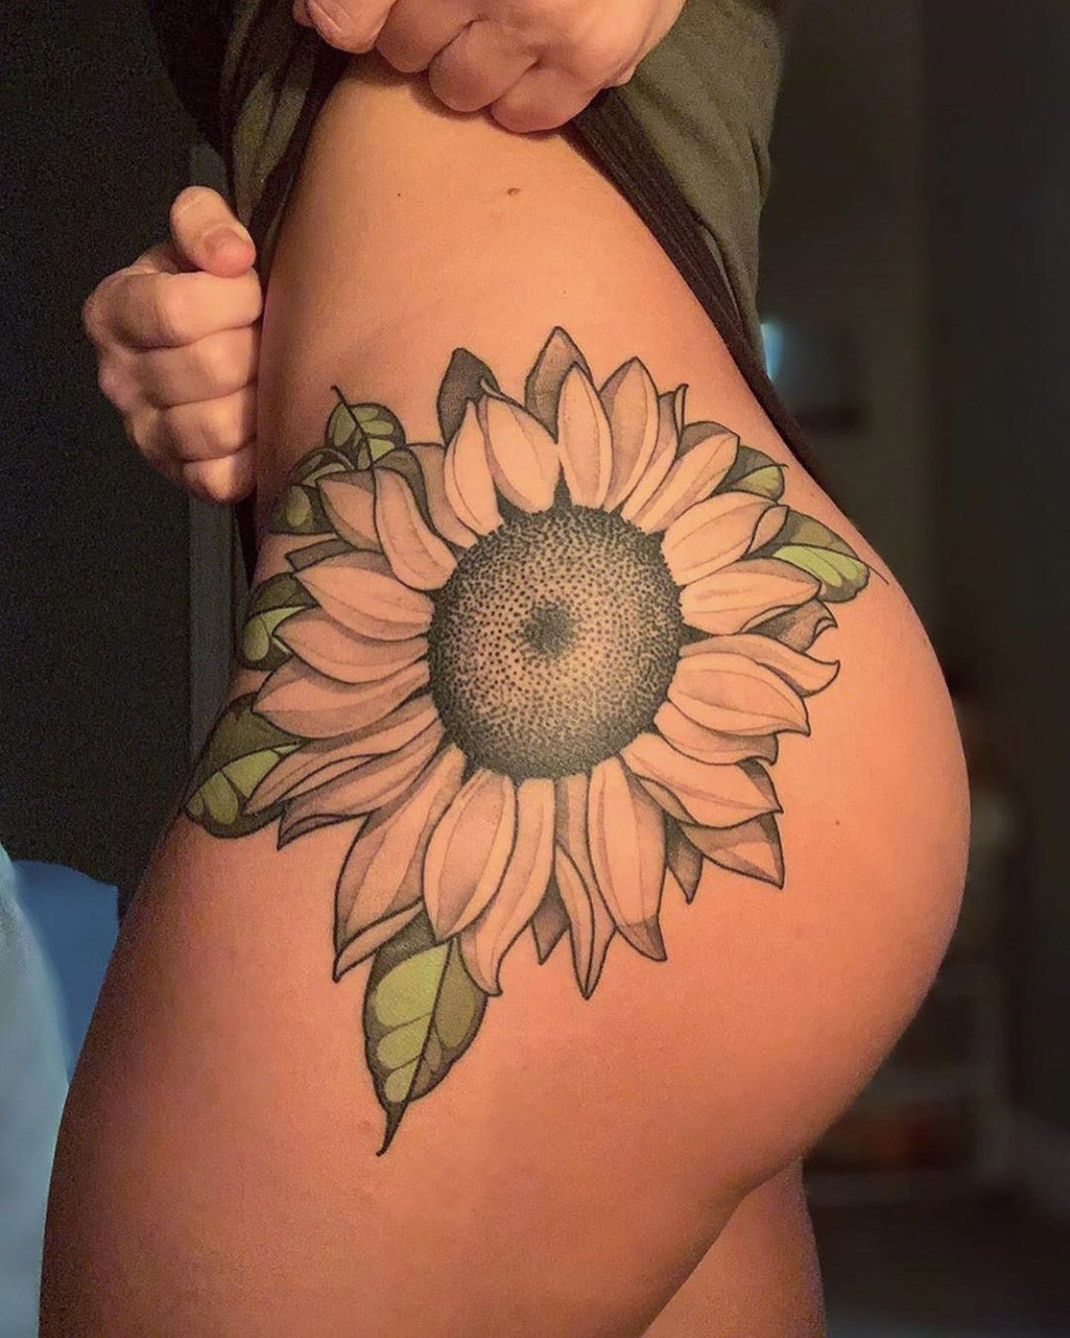 Tattoo Ideas — Sunflower hip tattoo by Matt stebly, an artist at...